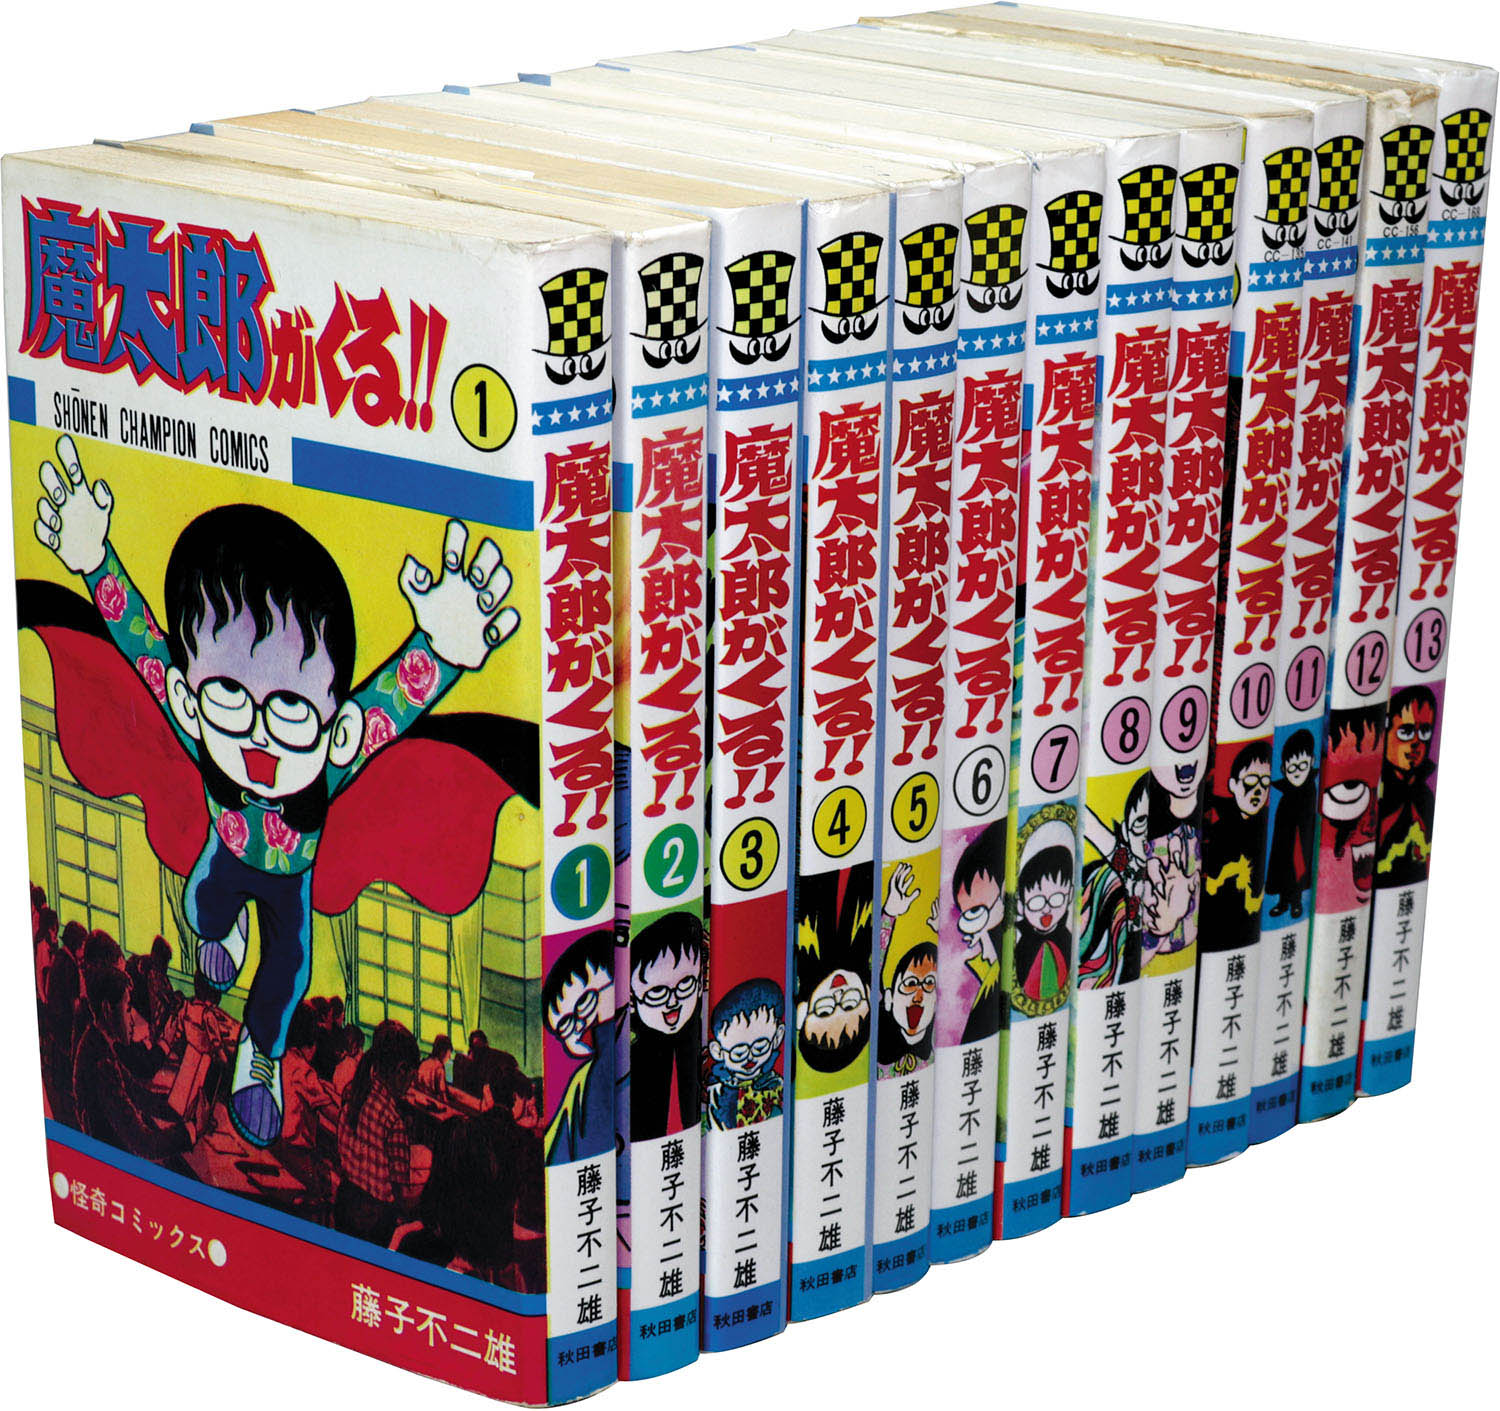 少年チャンピオンコミックス 藤子不二雄 魔太郎がくる 全13巻初版セット